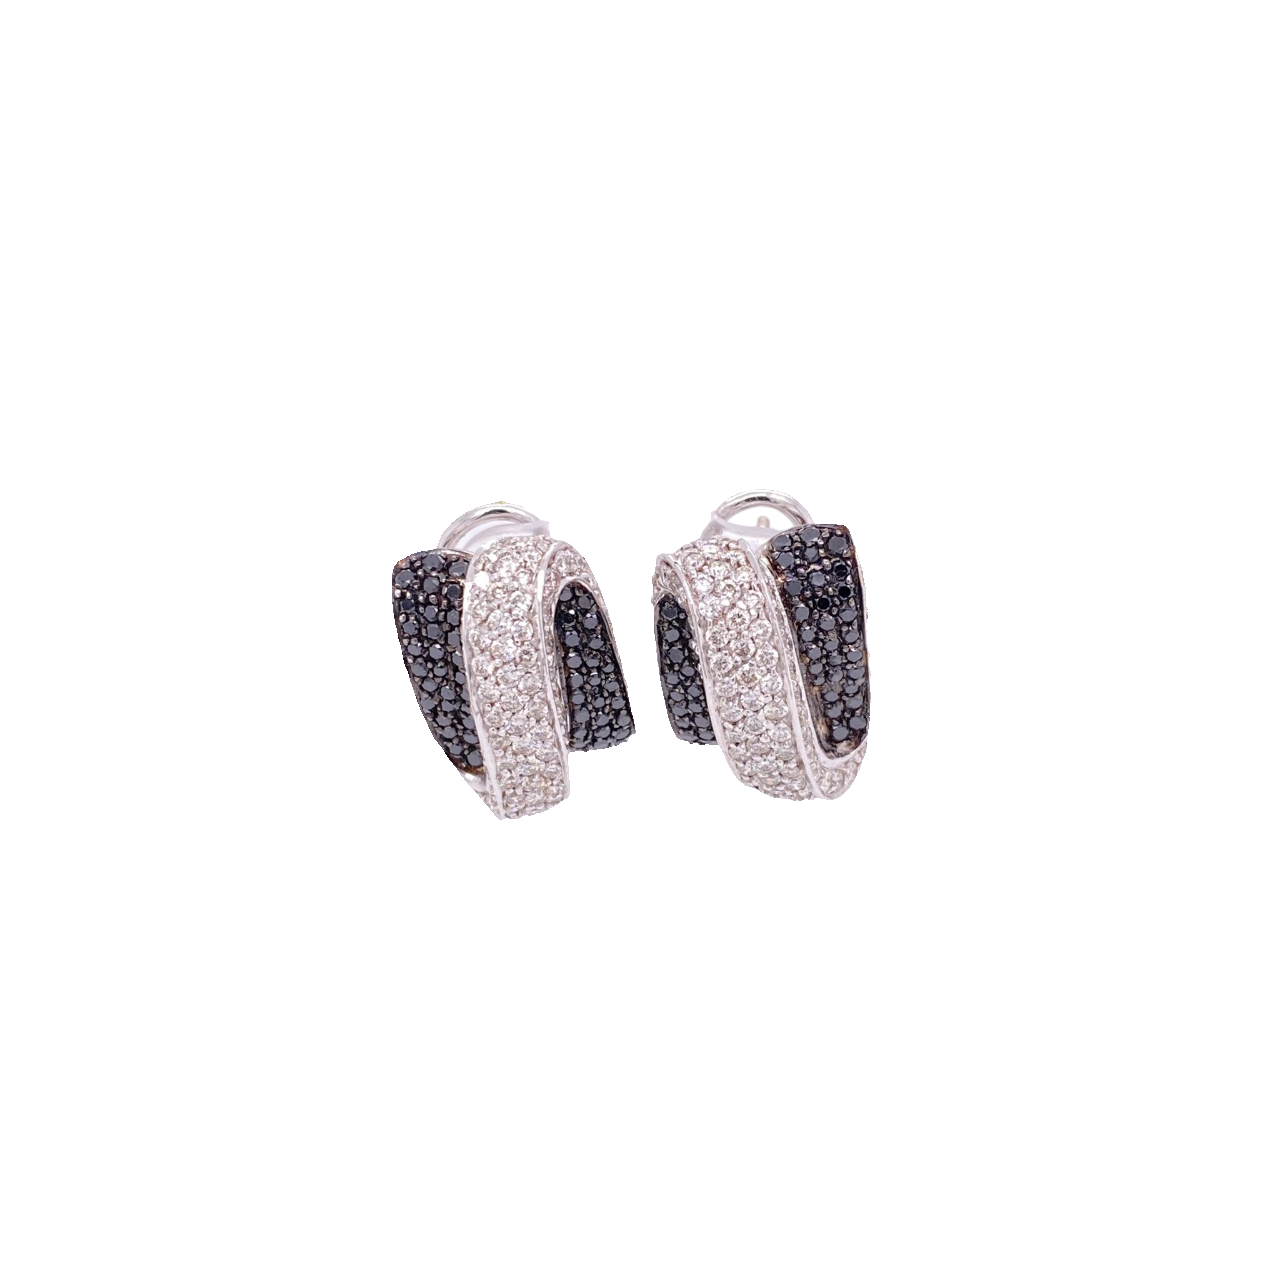 Black Diamond Earrings 18 Karat White Gold Black Diamond 1.87 Carats